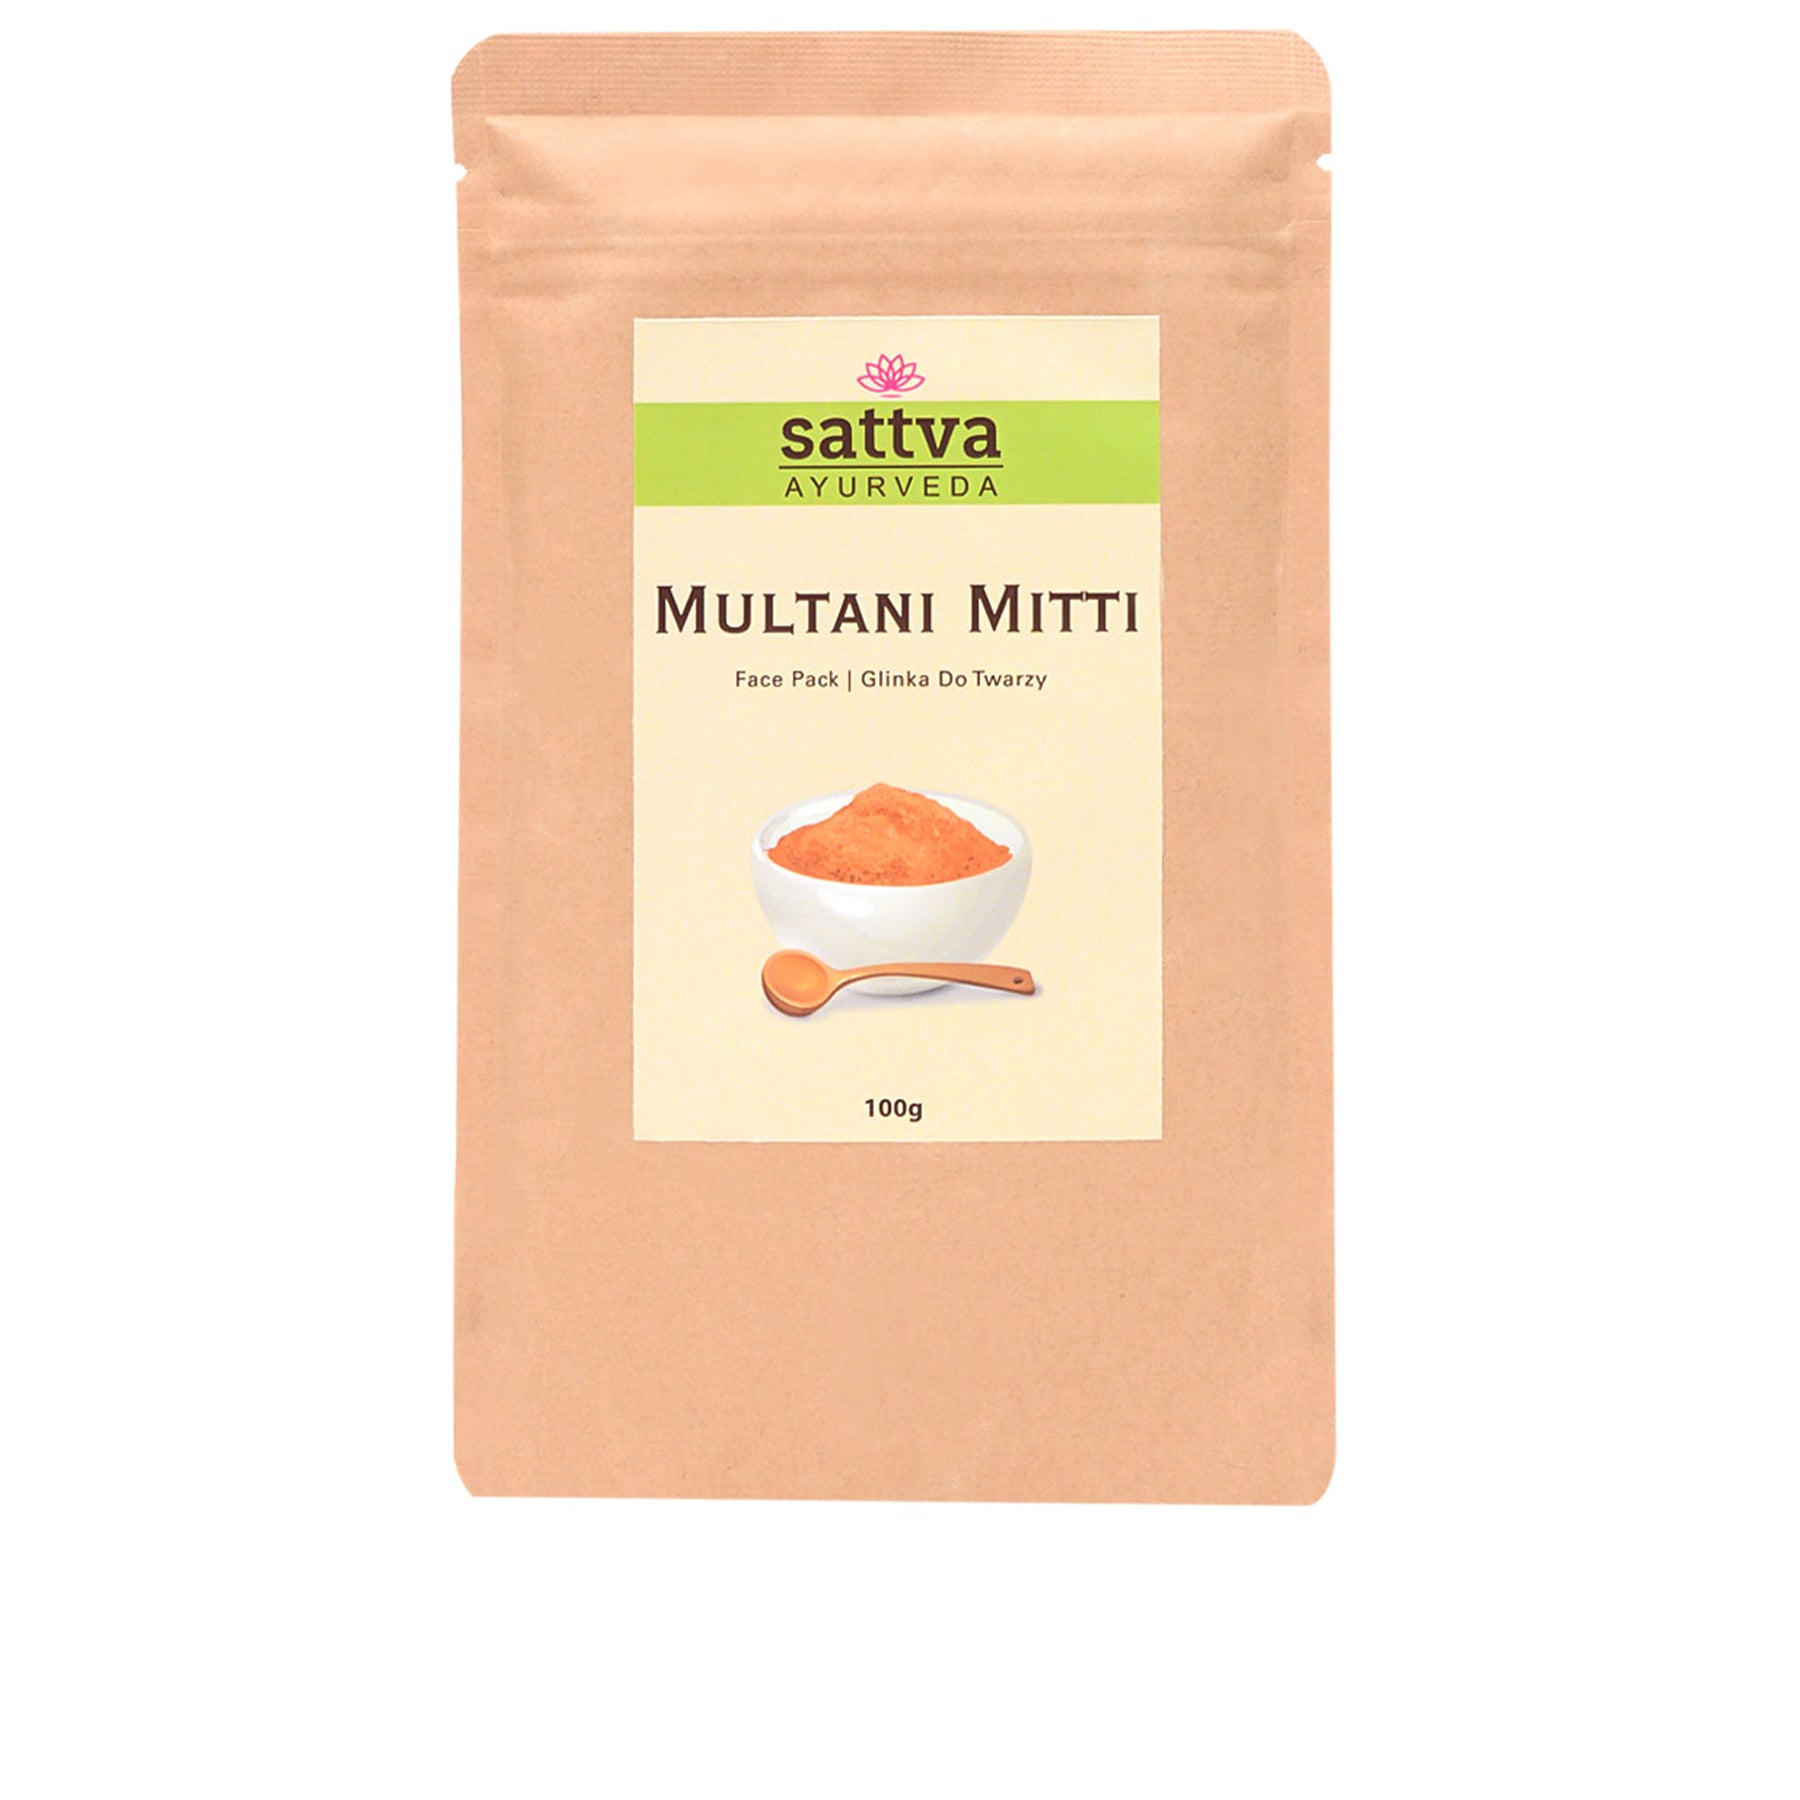 Multani Mitti Herbal Facial Mask Powder